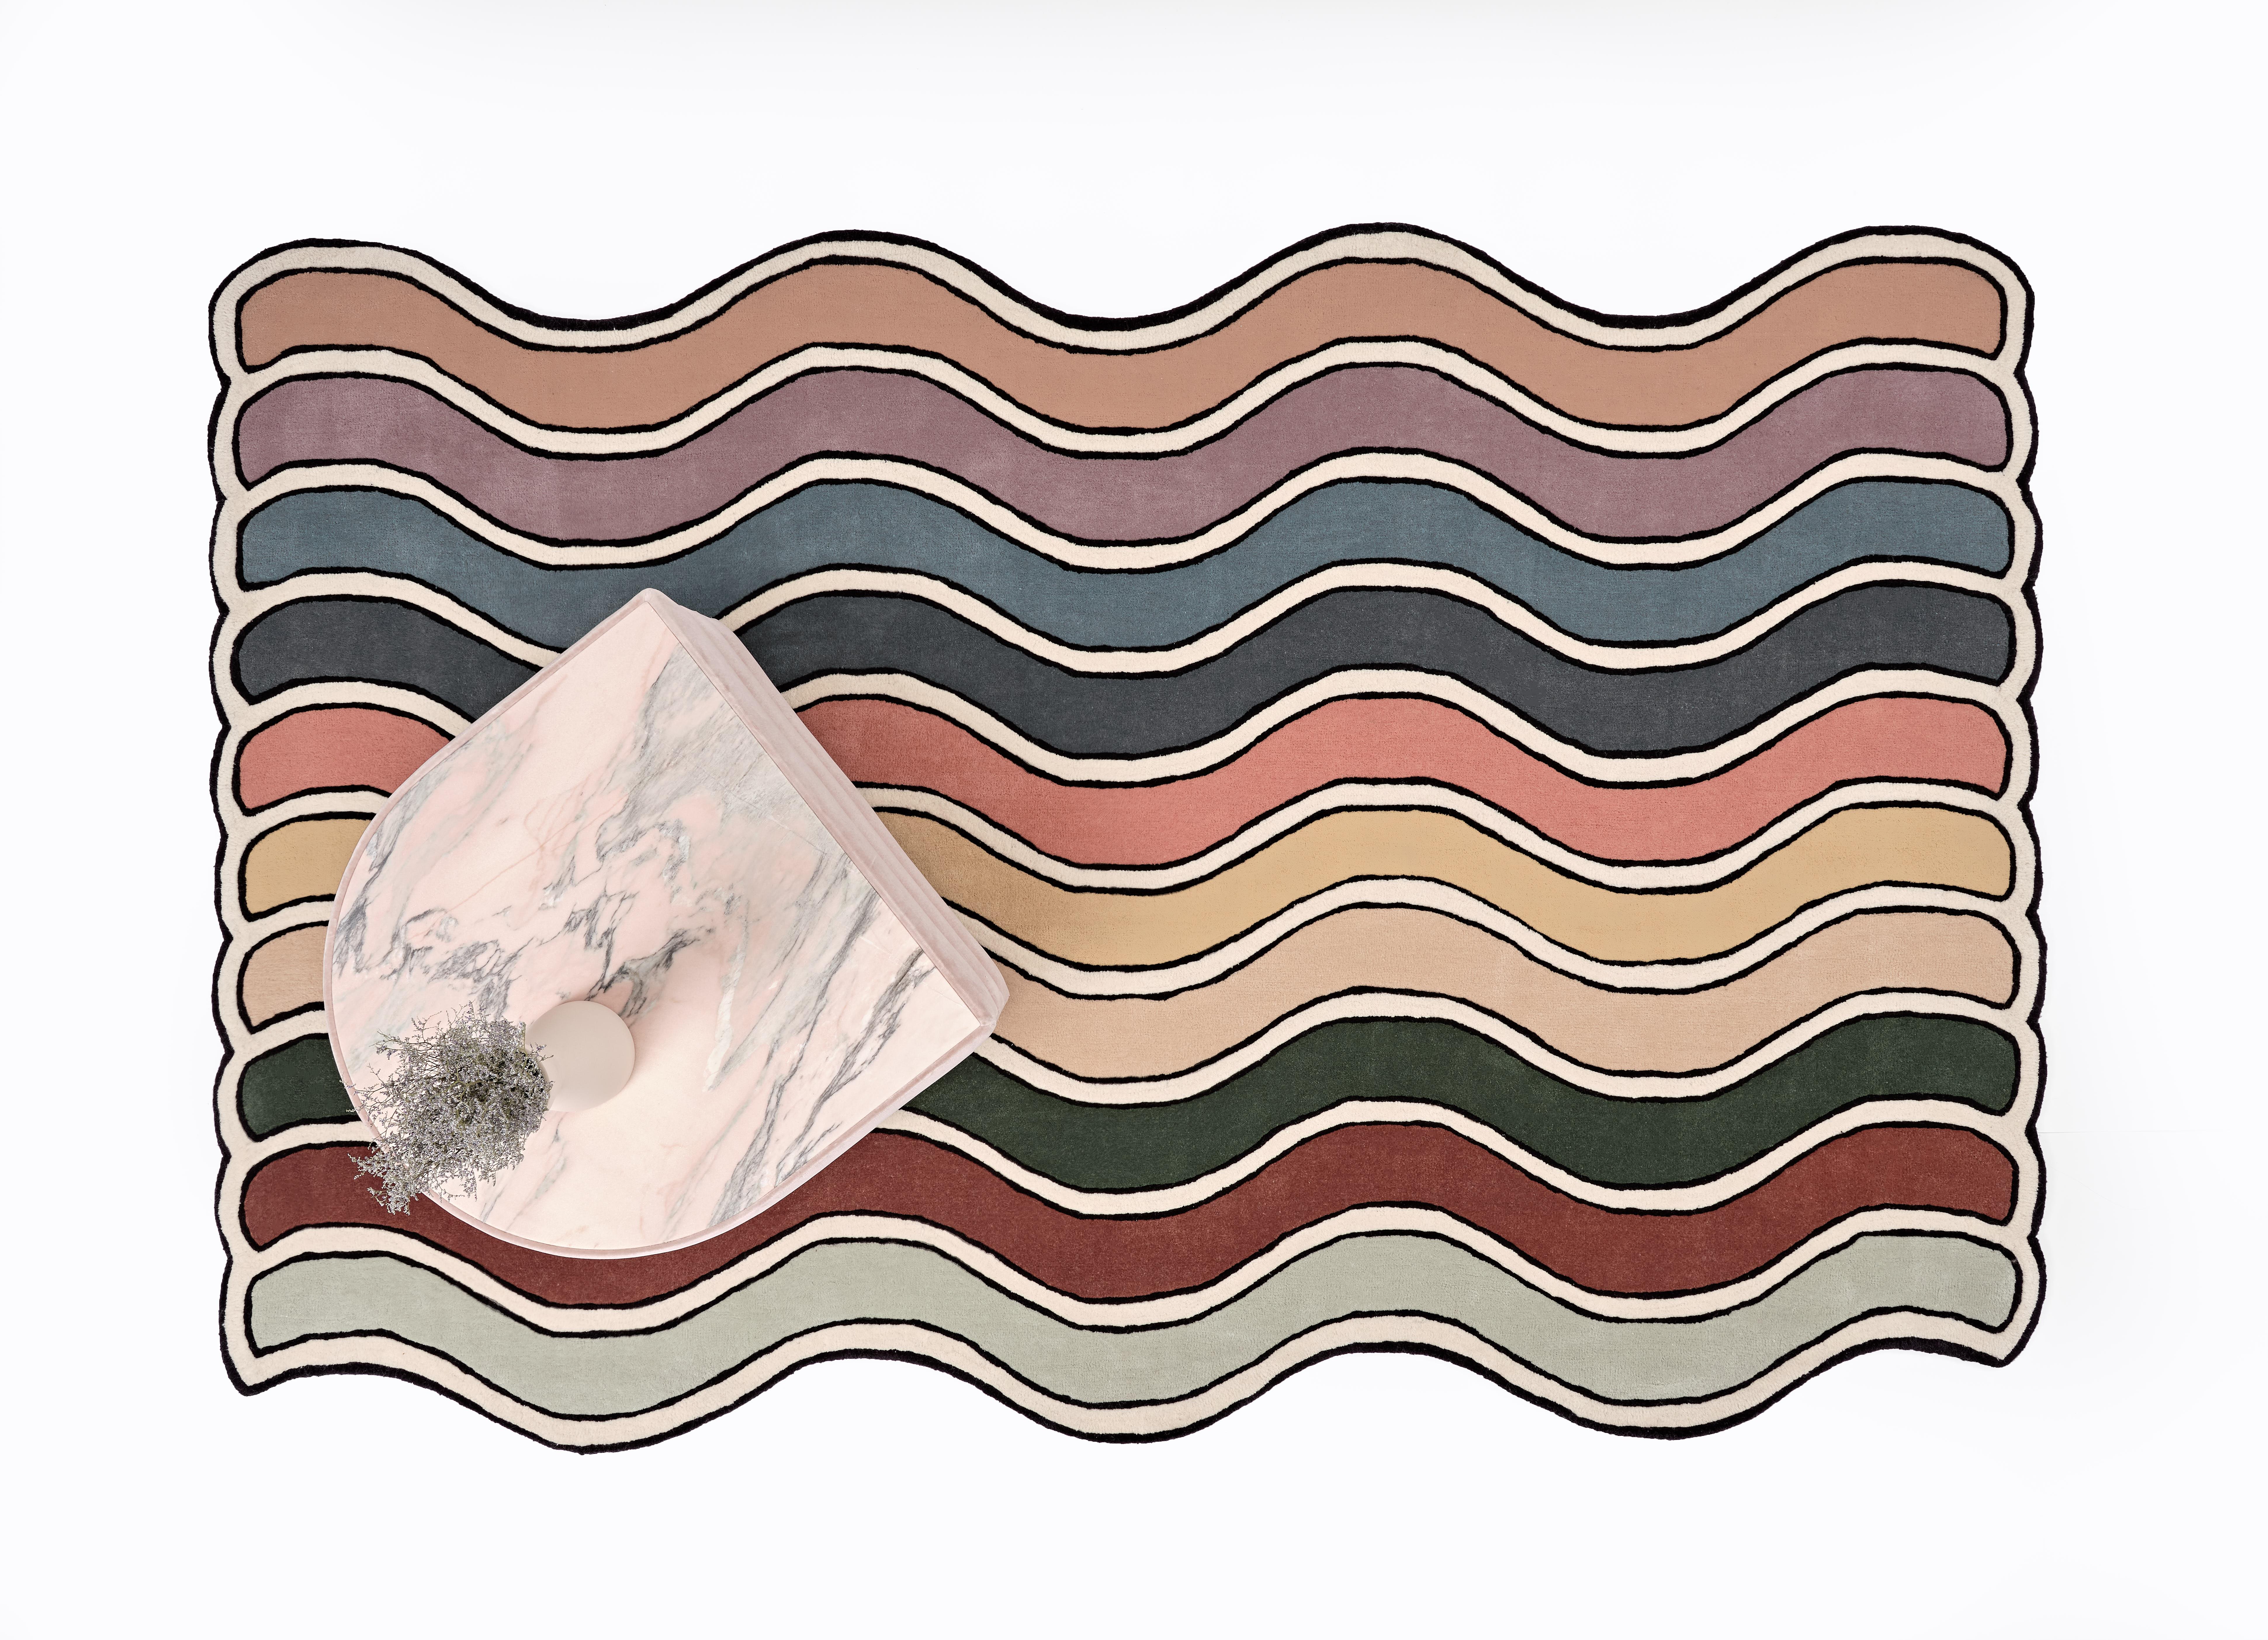 Le tapis Wavy est une série de tapis exposés pour la première fois dans le cadre de notre projet de maisons en pièces détachées à Kennebunk, dans le Maine. Le concept du tapis Wavy est né d'un seul tapis composé de 10 rayures multicolores et